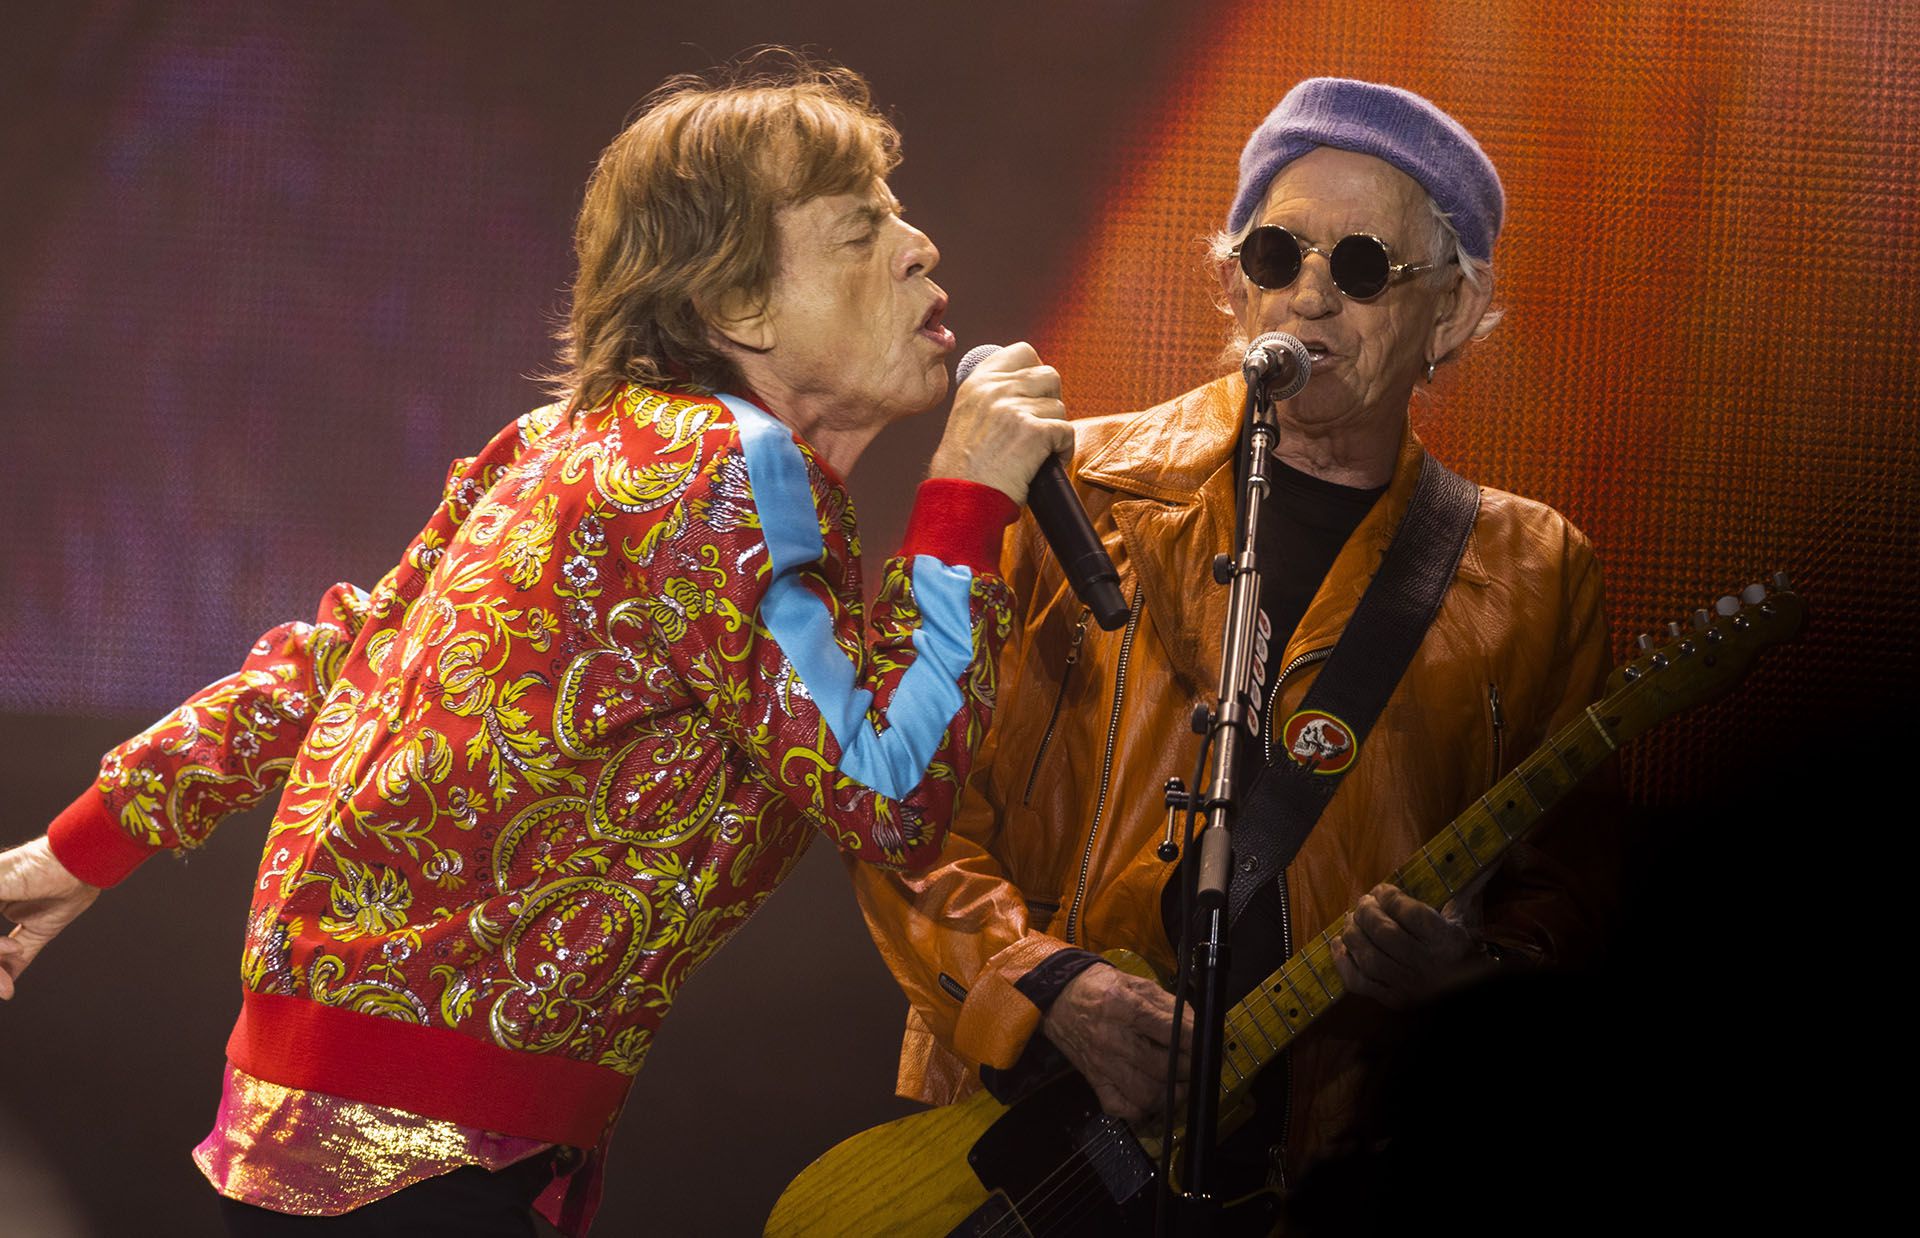 La relación entre Jagger y Richards no siempre fue pacífica. Hubo épocas tormentosas en las que la estabilidad del grupo peligró (Photo by Sven Hoogerhuis/BSR Agency/Getty Images)